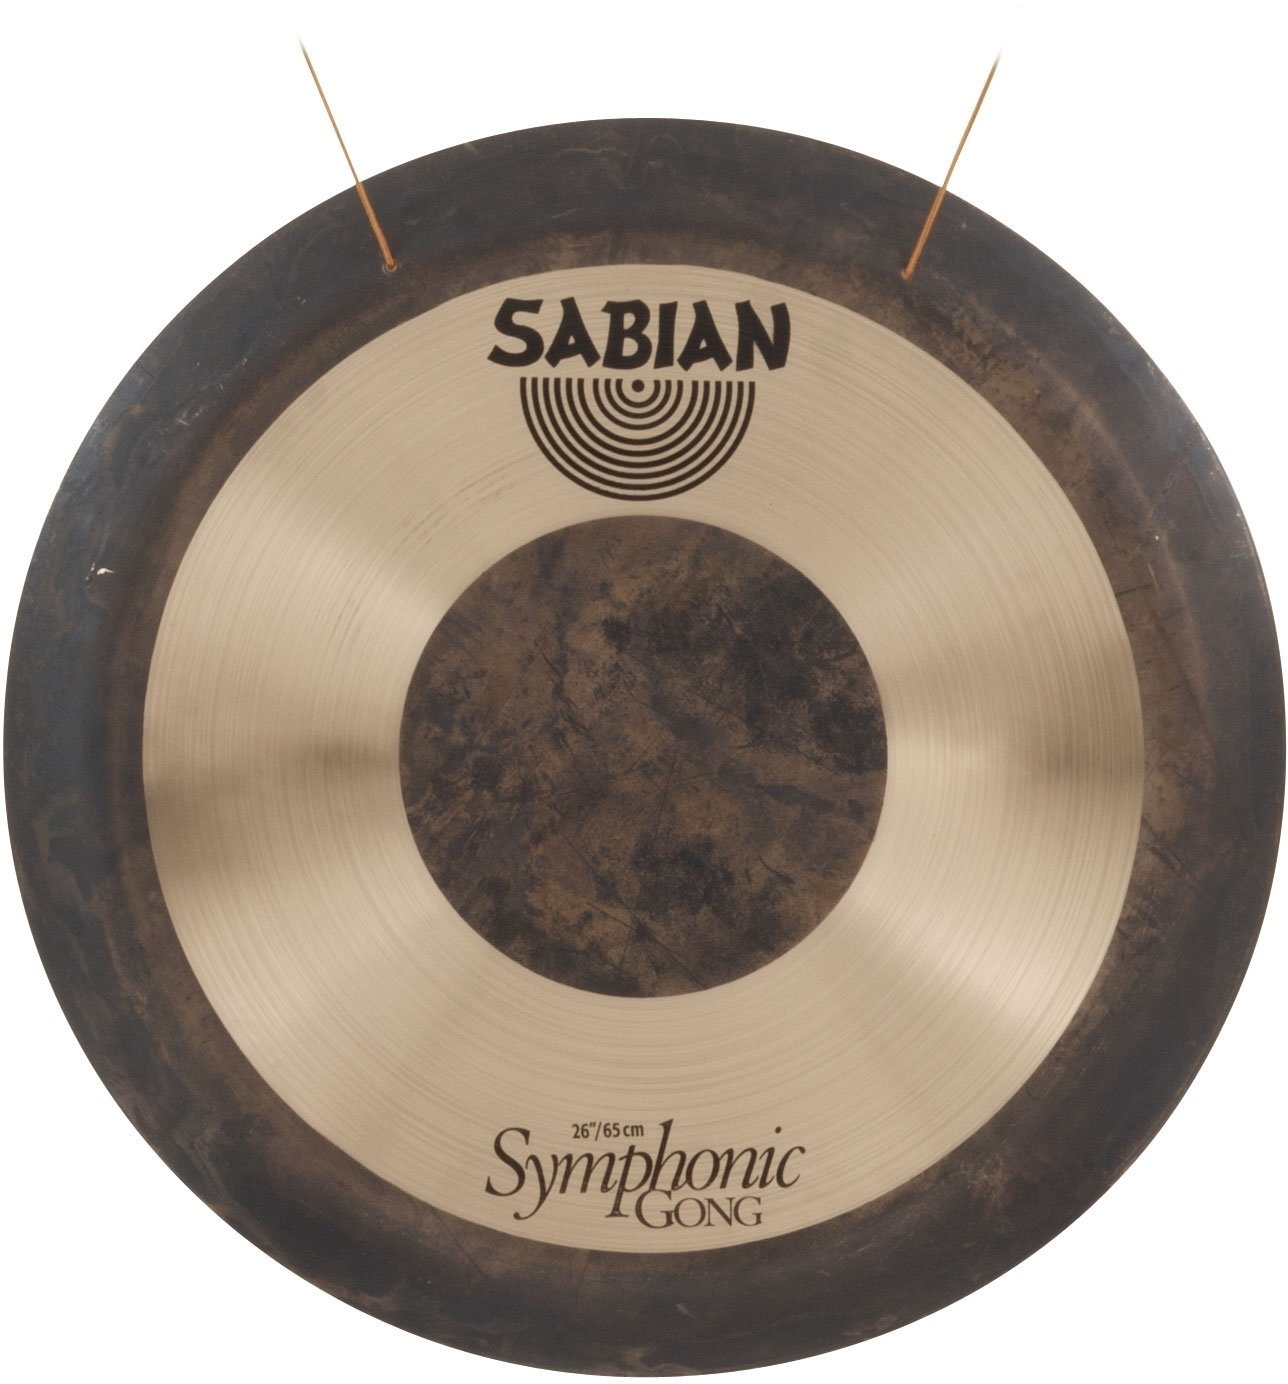 Γκονγκ Sabian 52602 Symphonic Medium-Heavy Γκονγκ 26"